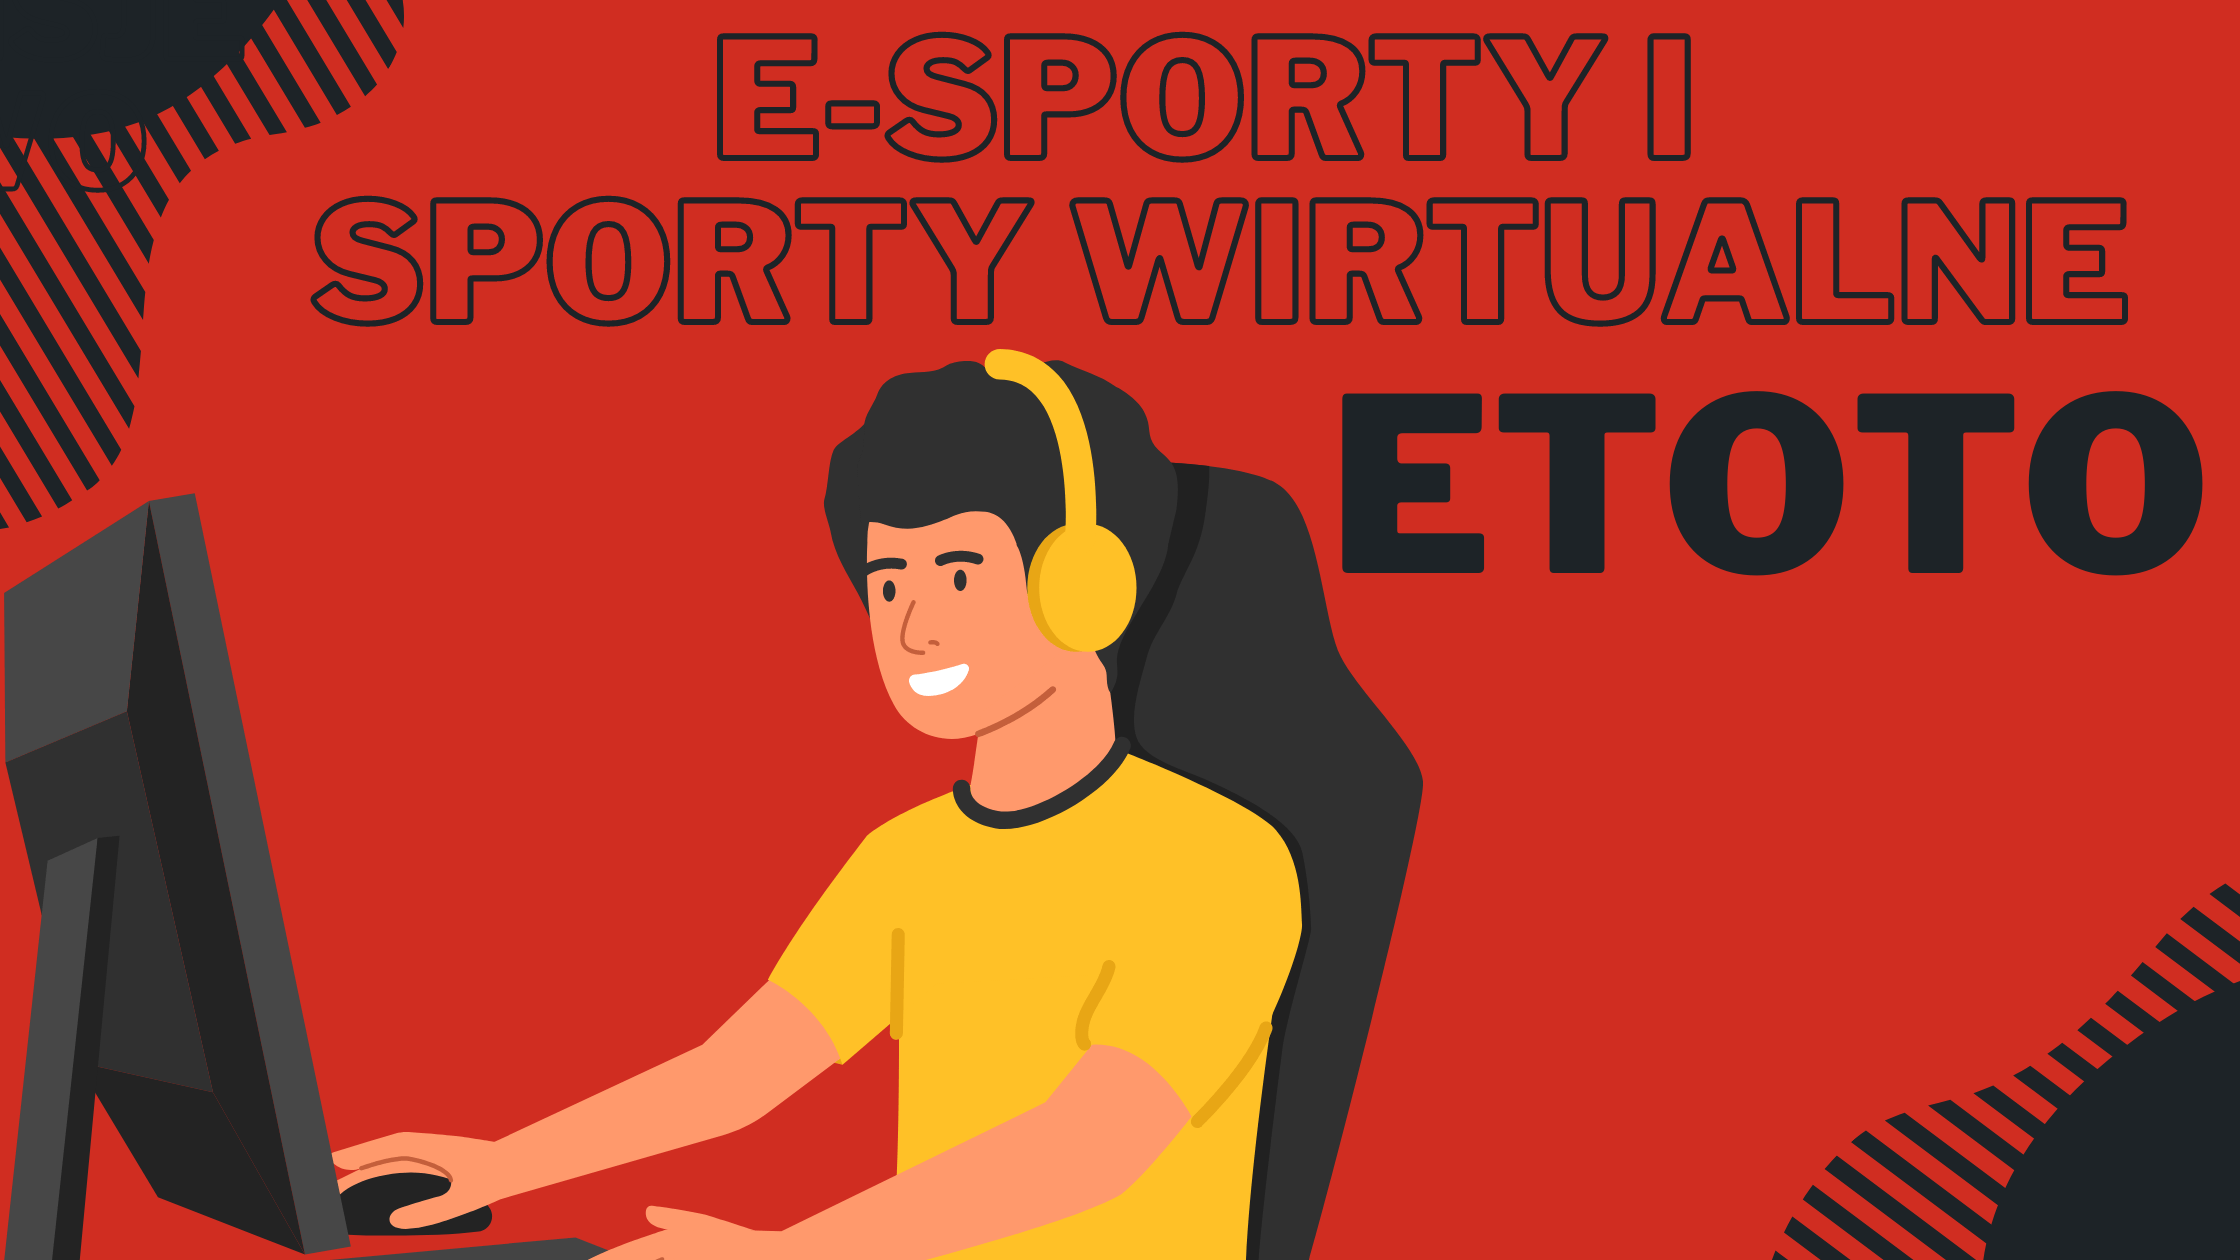 Sporty wirtualne Etoto i E-sporty